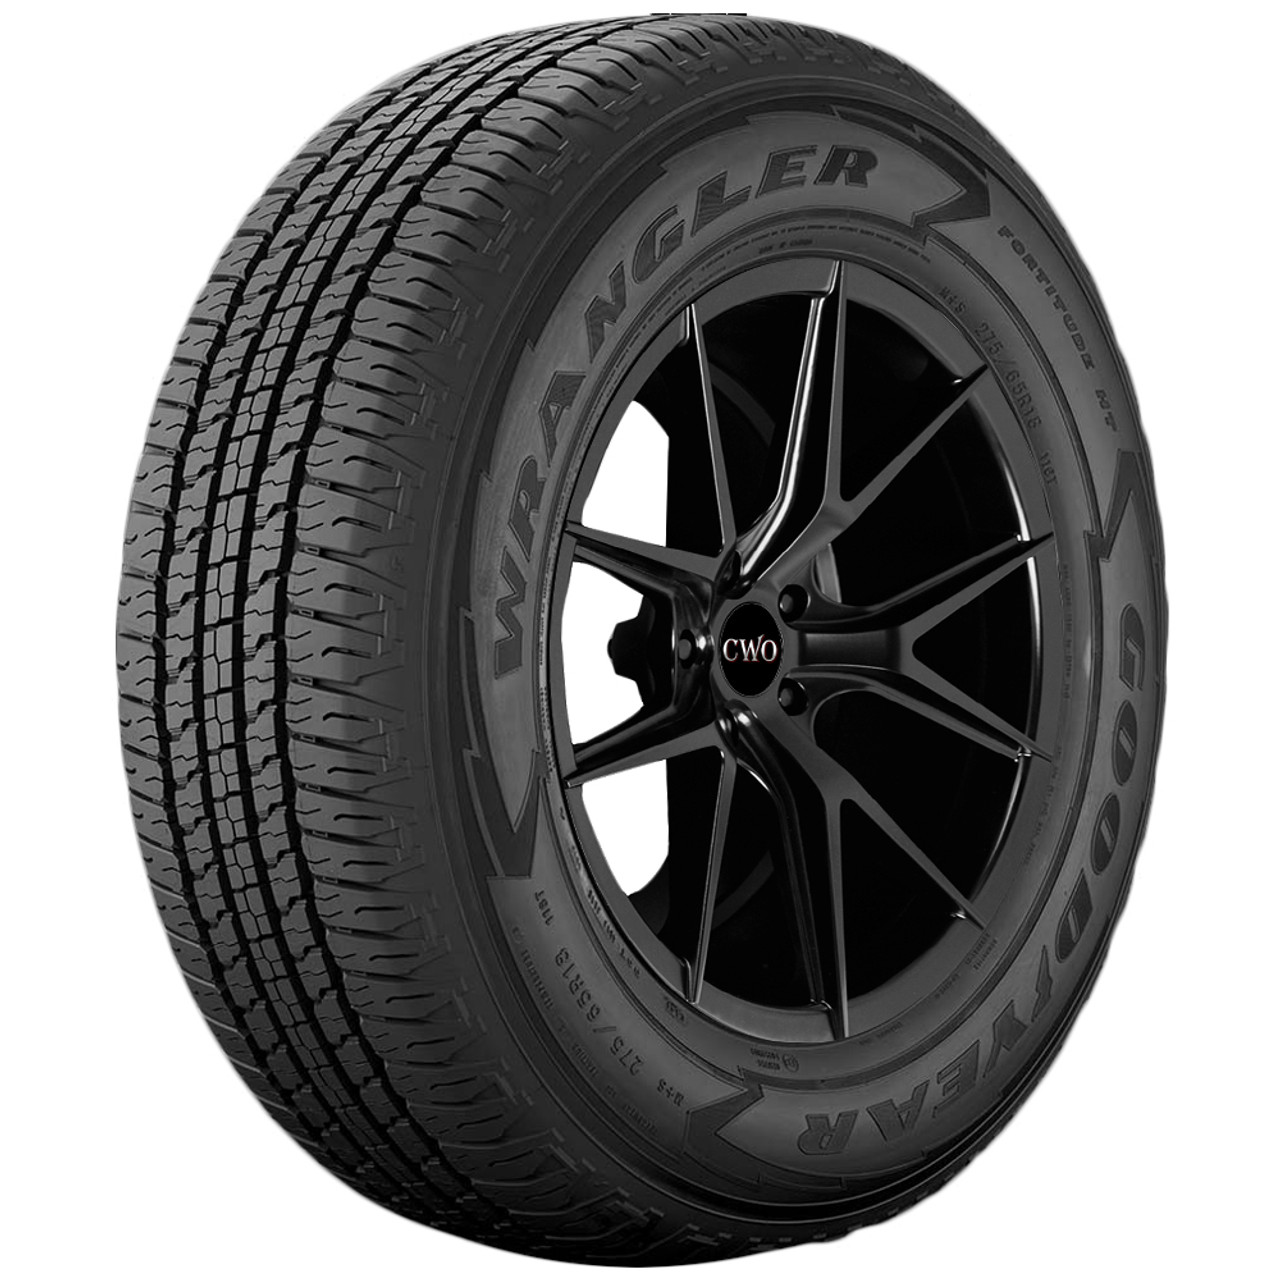 Goodyear Wrangler HT Tire LT235/85R16 744725502